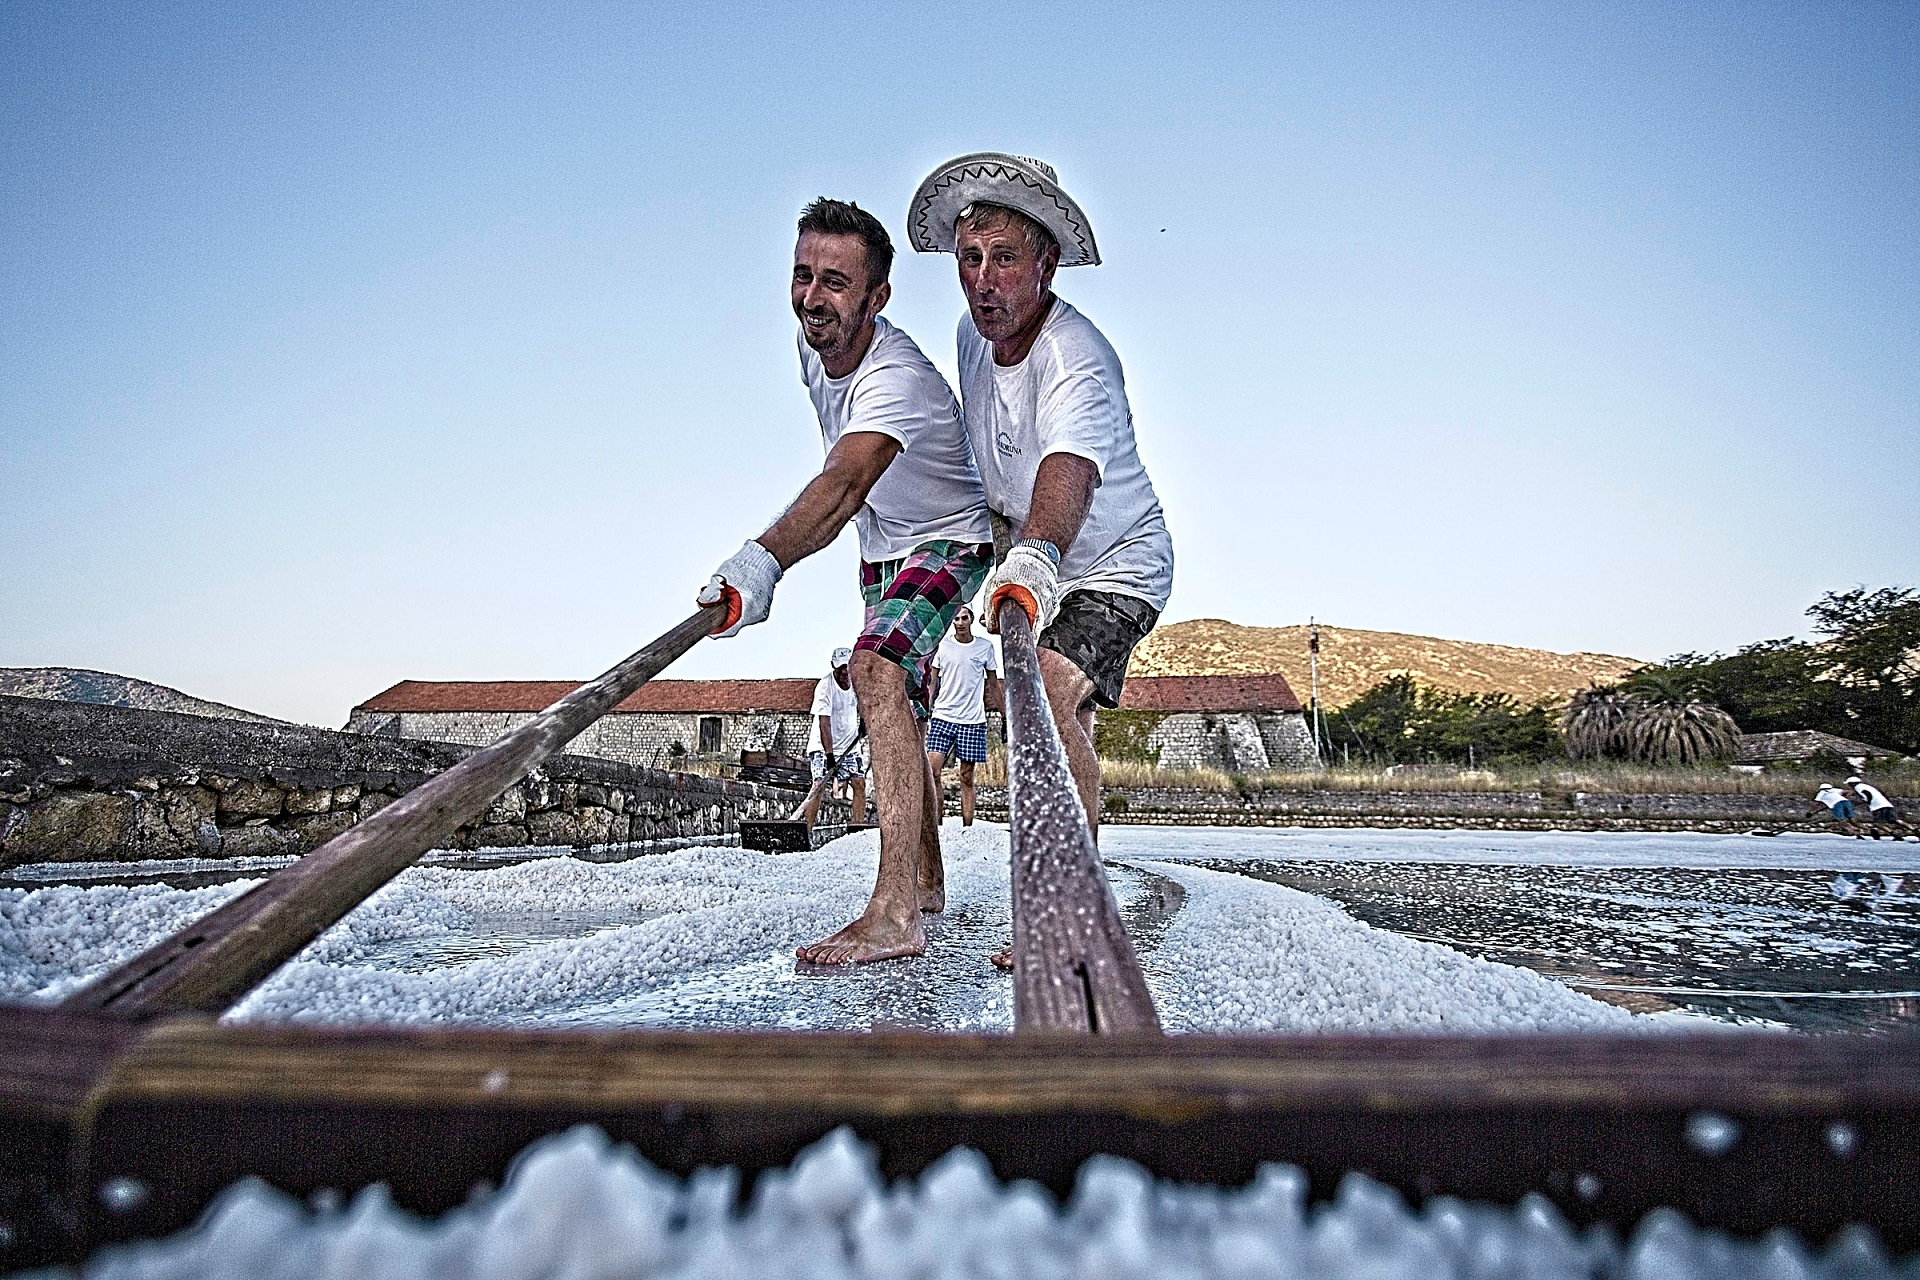 Unique Salt Festival on Croatia’s Pelješac peninsula about to start